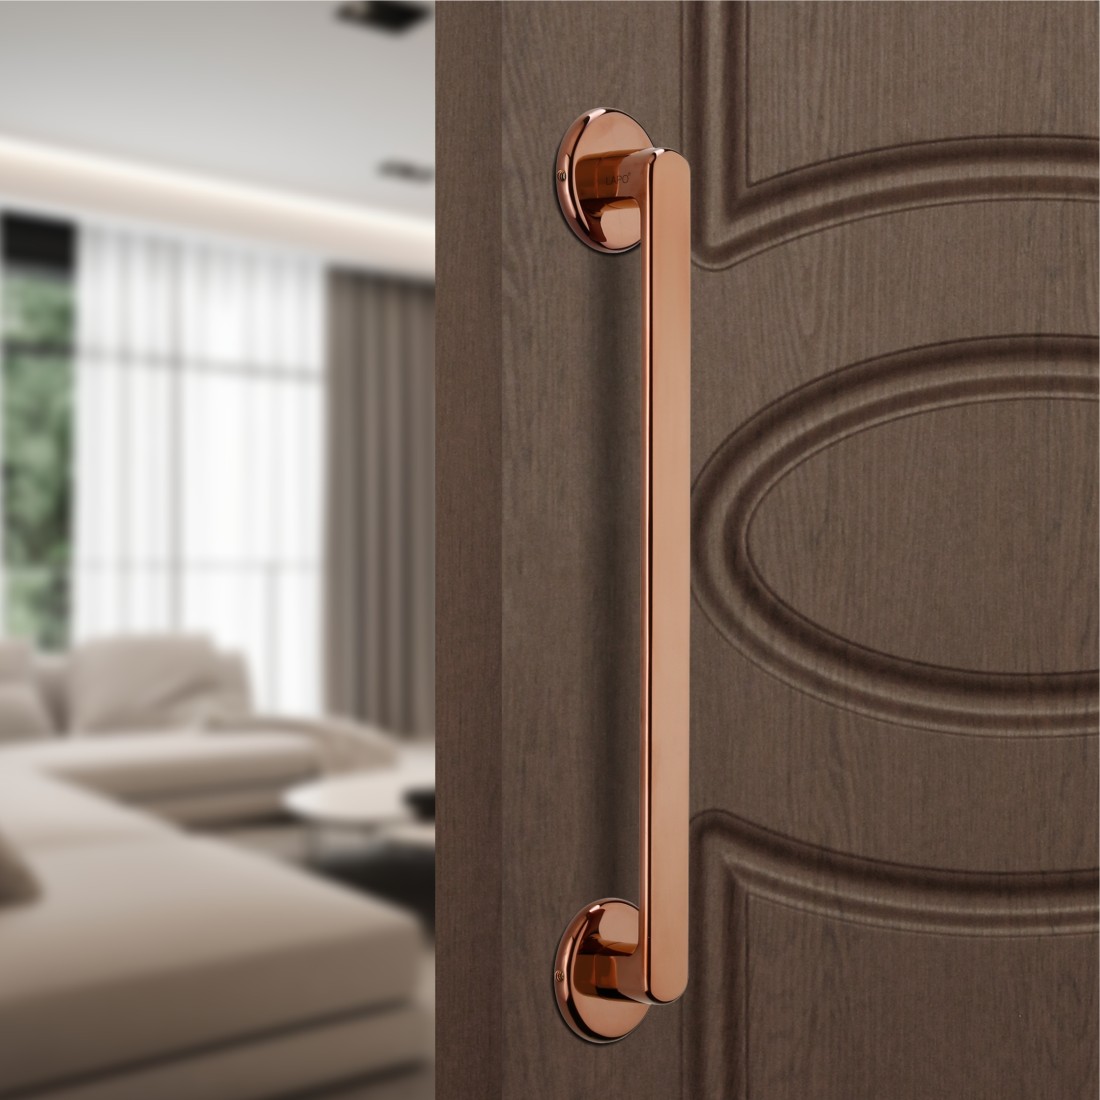 Buy LAPO Polo Door Handles for Main Door/ Main Door Handle/Door Hardware(12  inches, Rose Gold Finish) Online at Best Prices in India - JioMart.